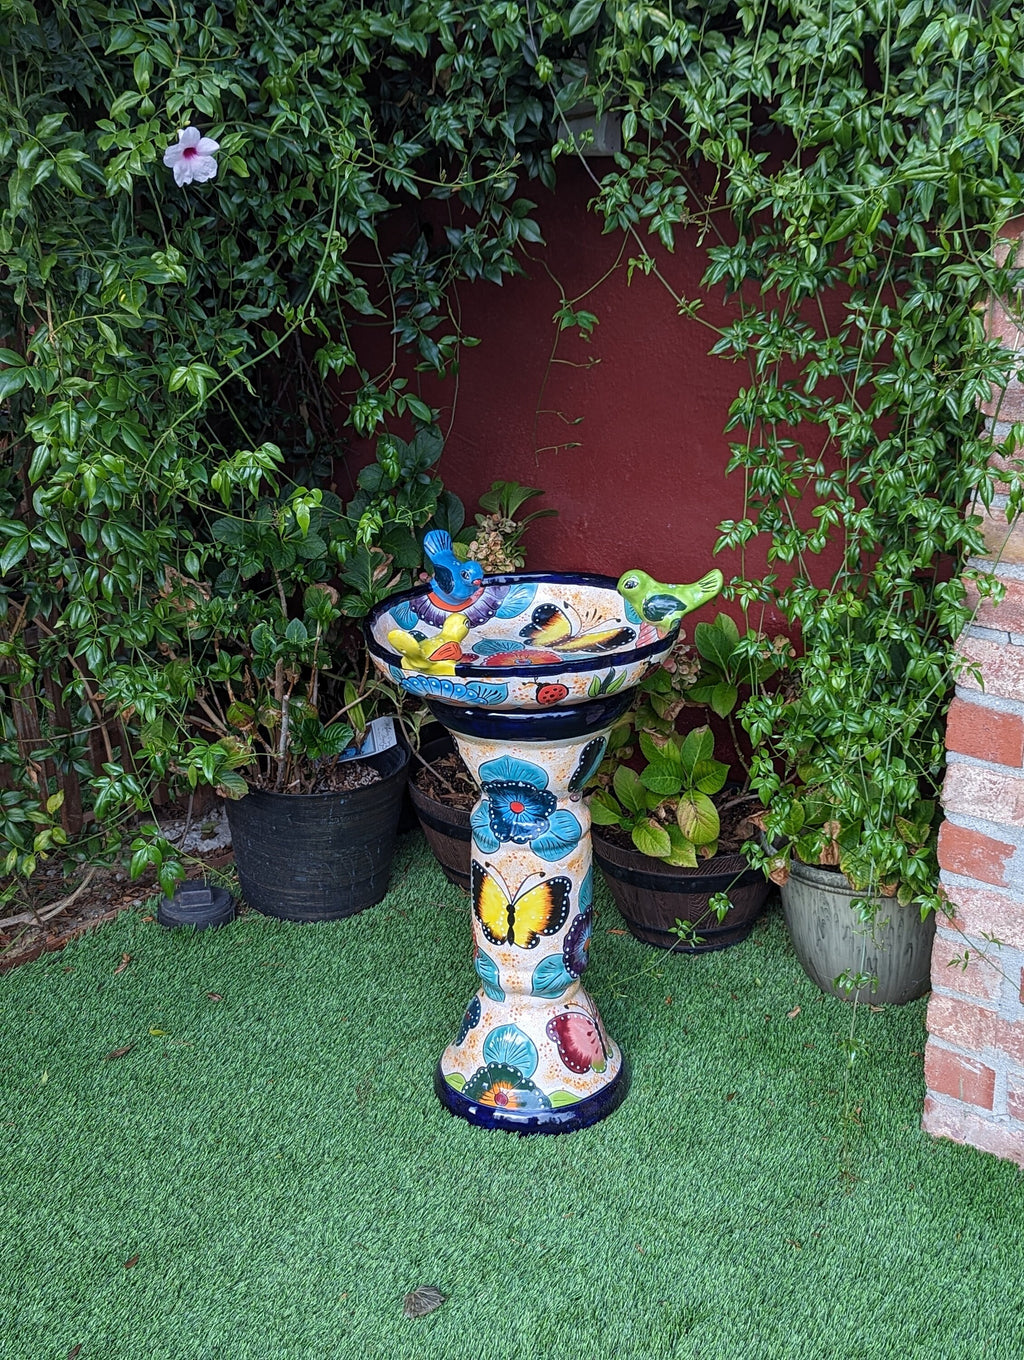 Pre-order | Bird Bath Garden Decor in Talavera Pottery Ships 9-1 | Handmade Mexican Pedestal & Basin for Birds Doubles as Stunning Yard Art